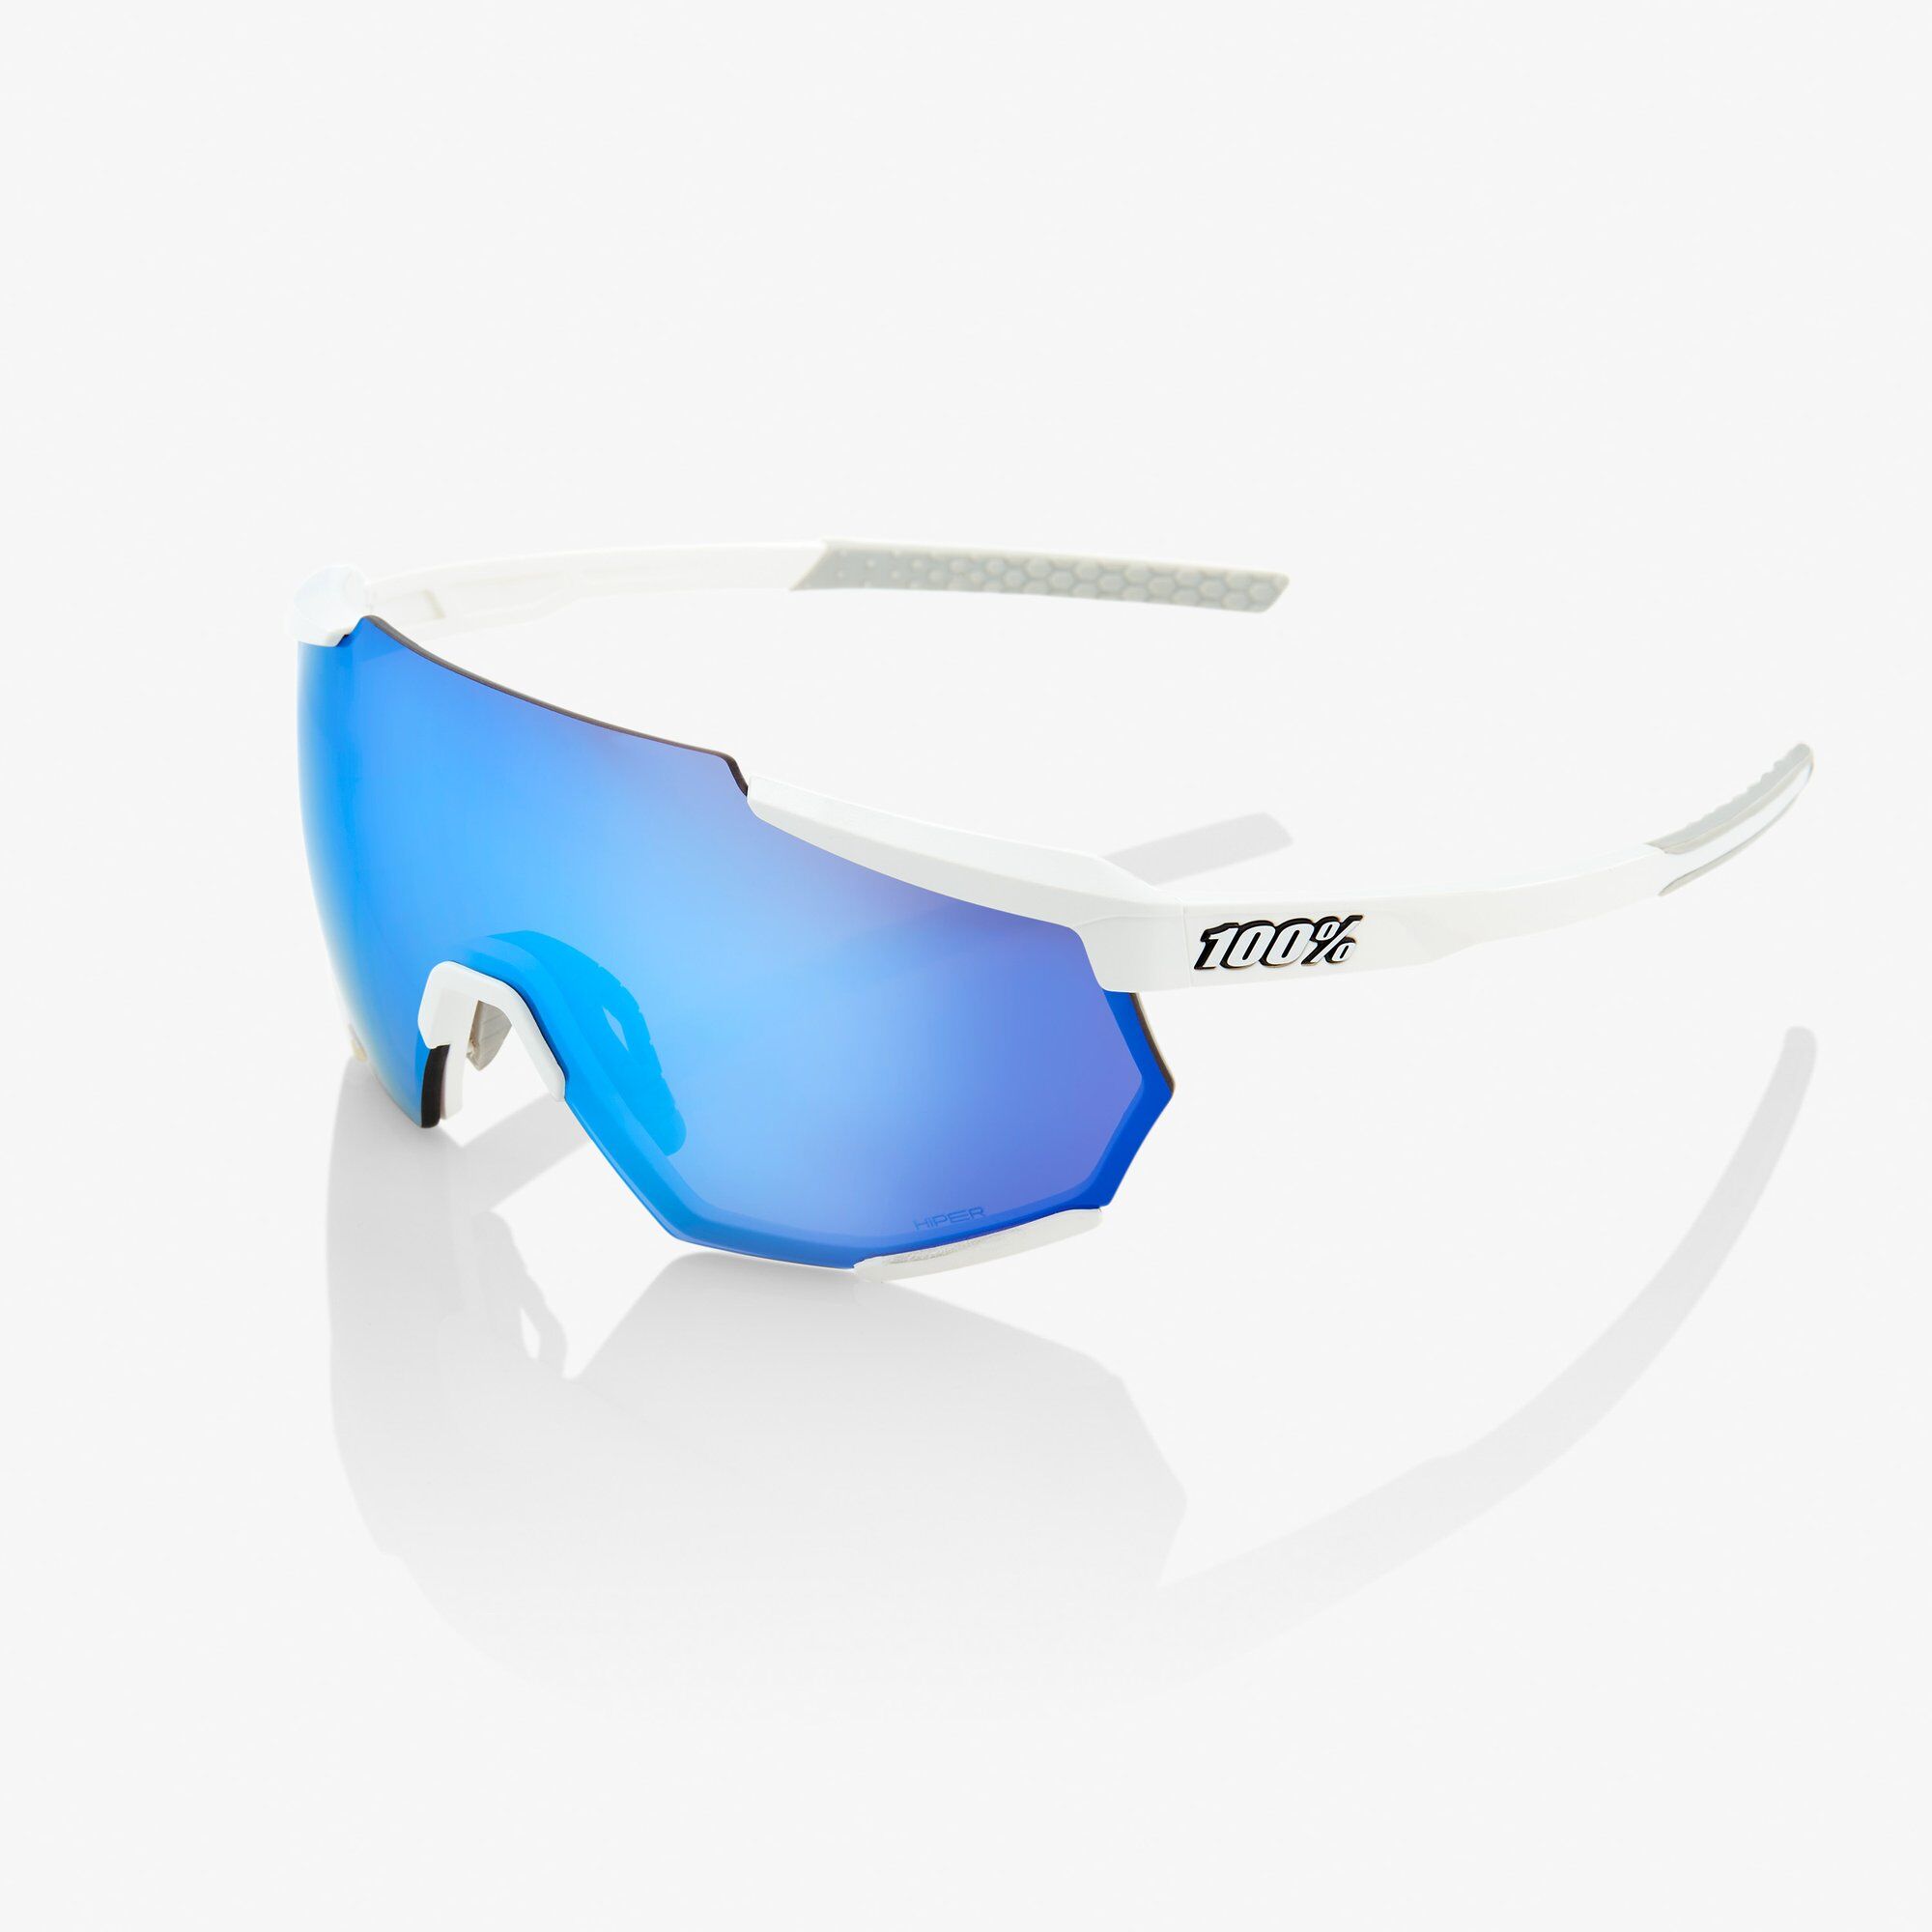 100% Racetrap - Sunglasses